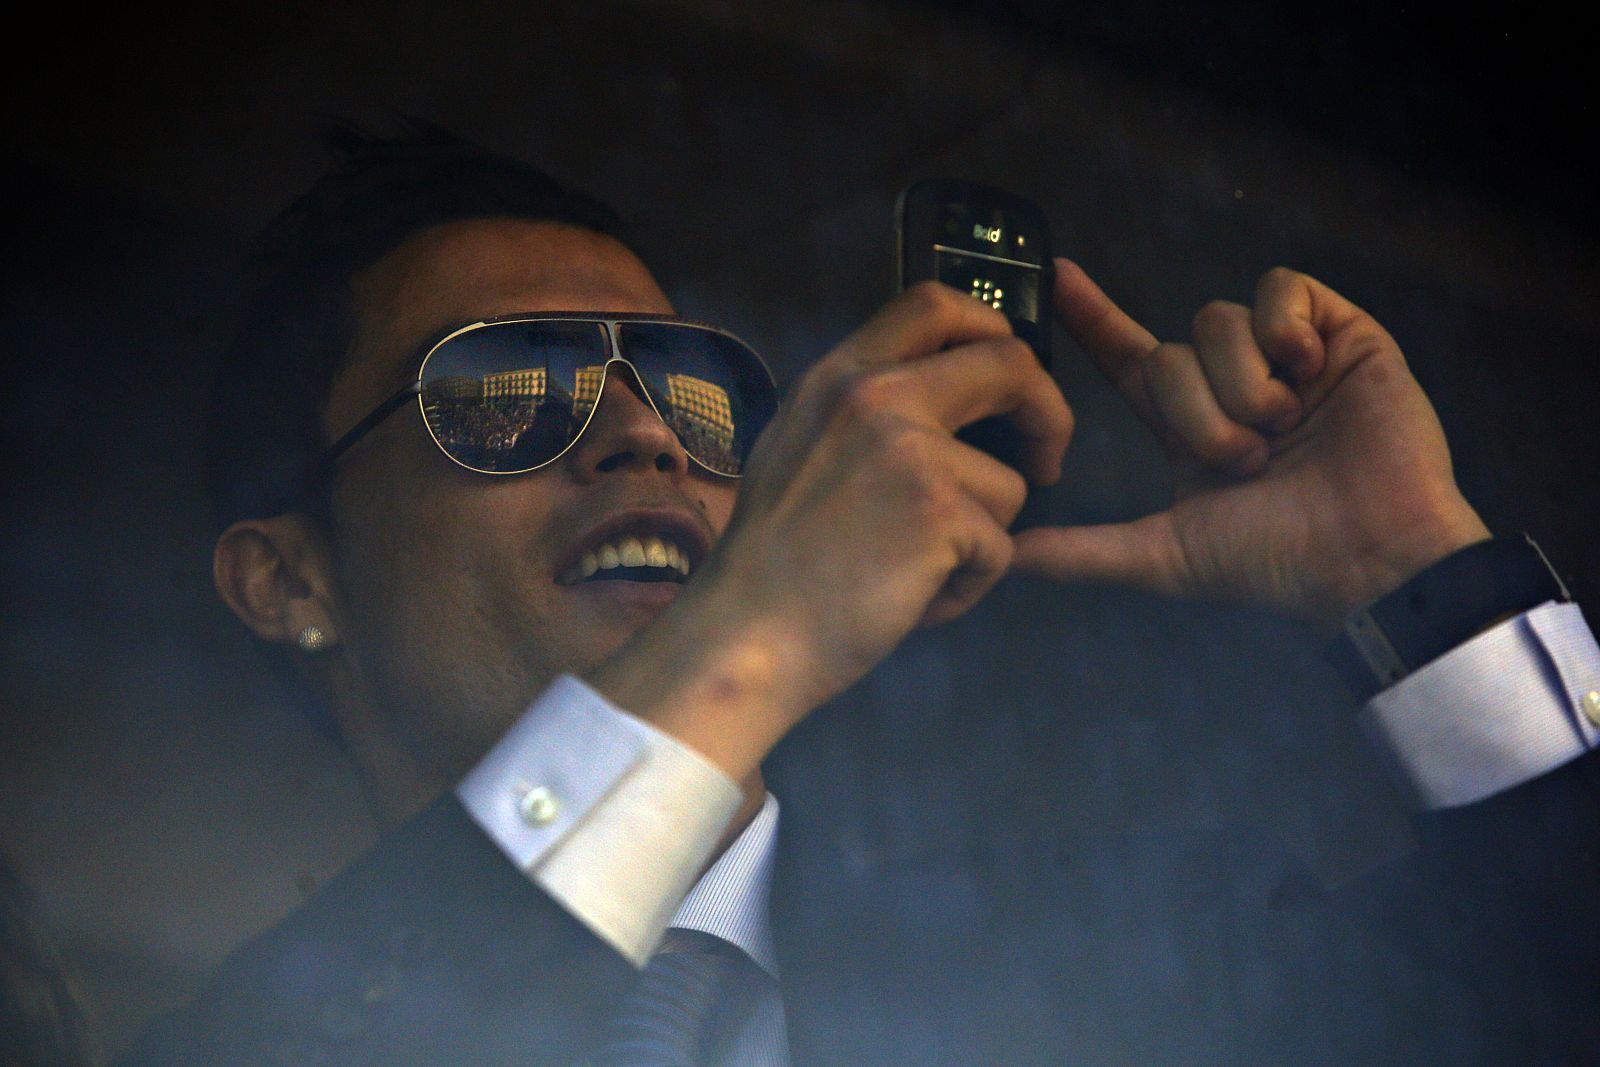 El delantero portugués del Real Madrid, Cristiano Ronaldo, haciendo una foto con su teléfono móvil.